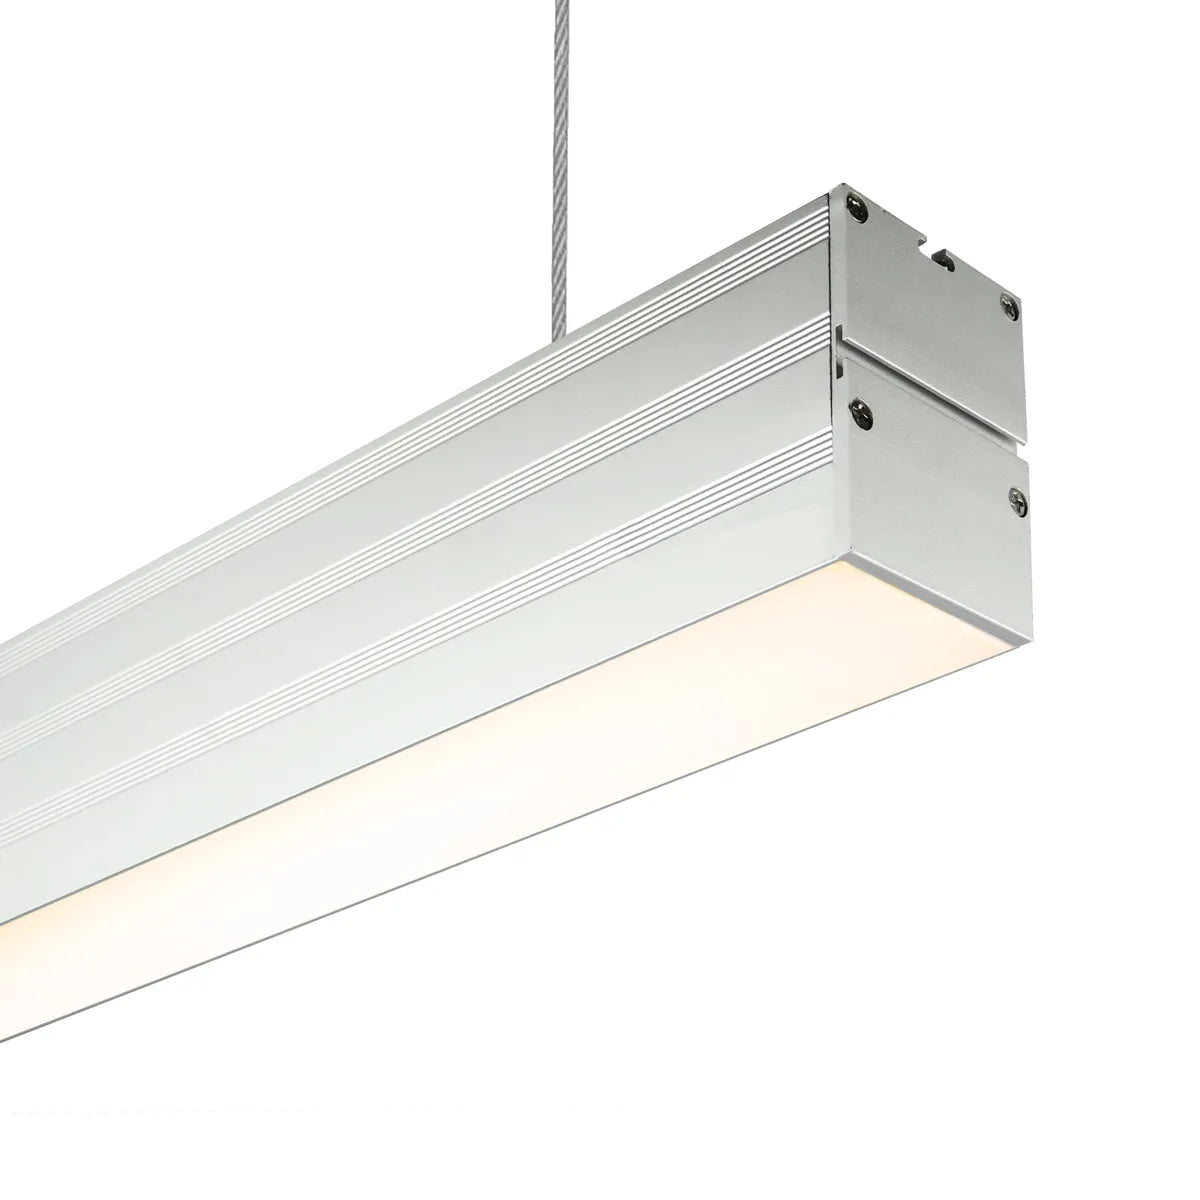 Hangende LED Lichtbalken 120cm • Bespaar 60%